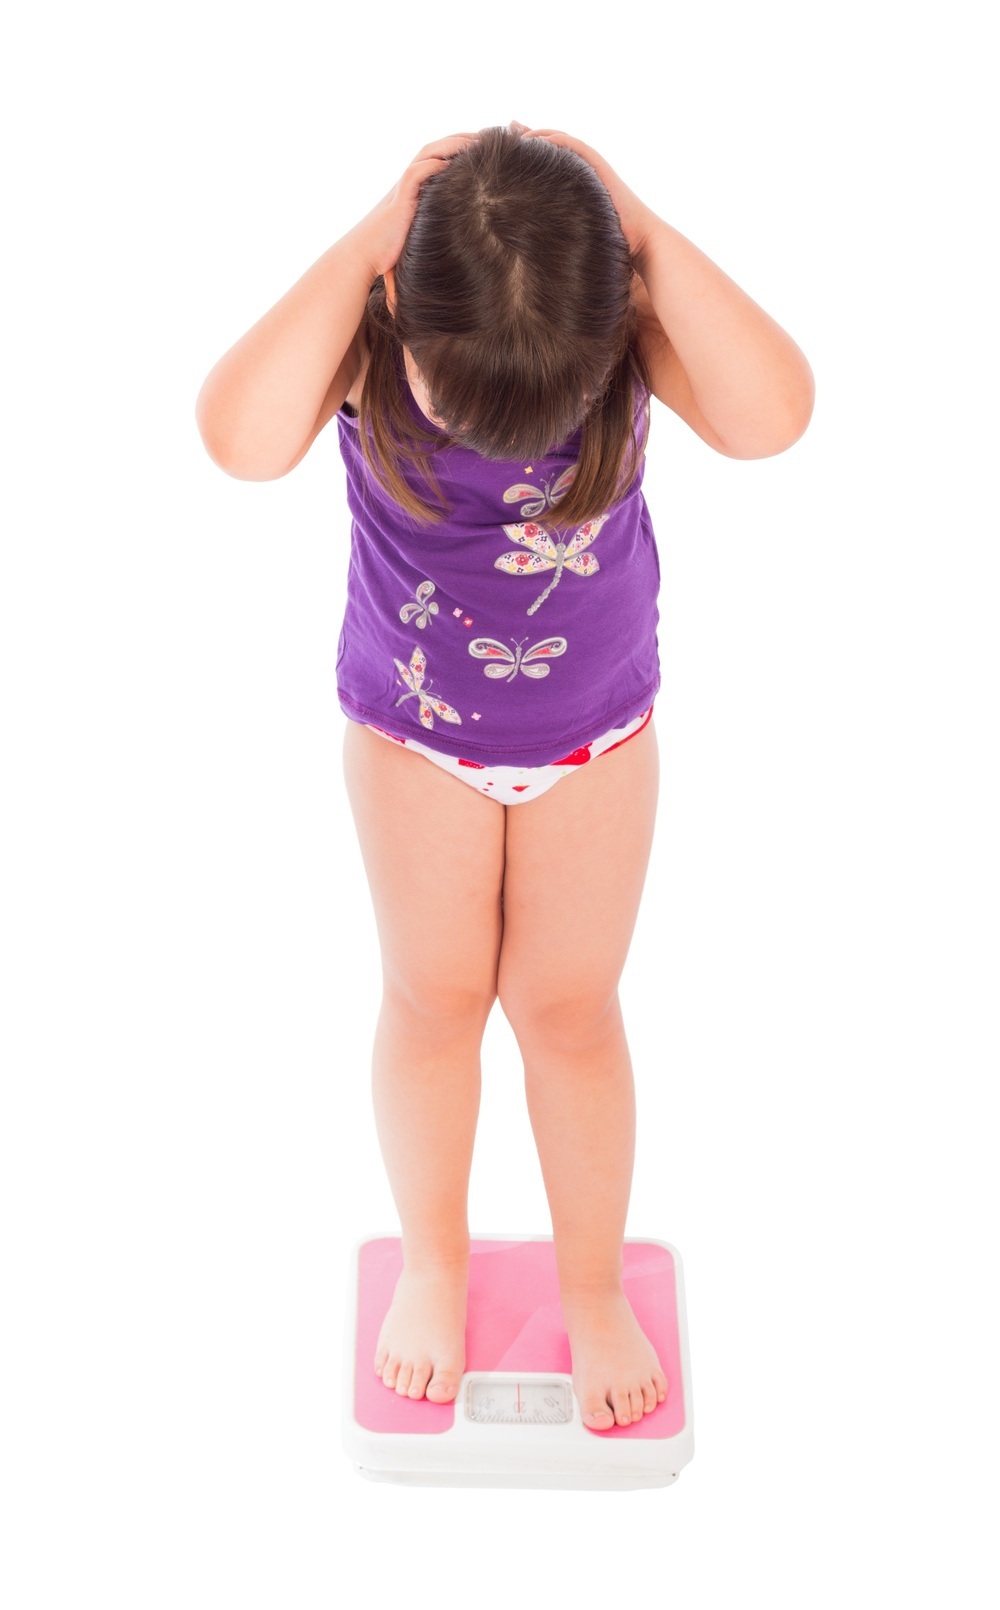 Criança em pé cima de uma balança - foto: Barabasa/ShutterStock.com